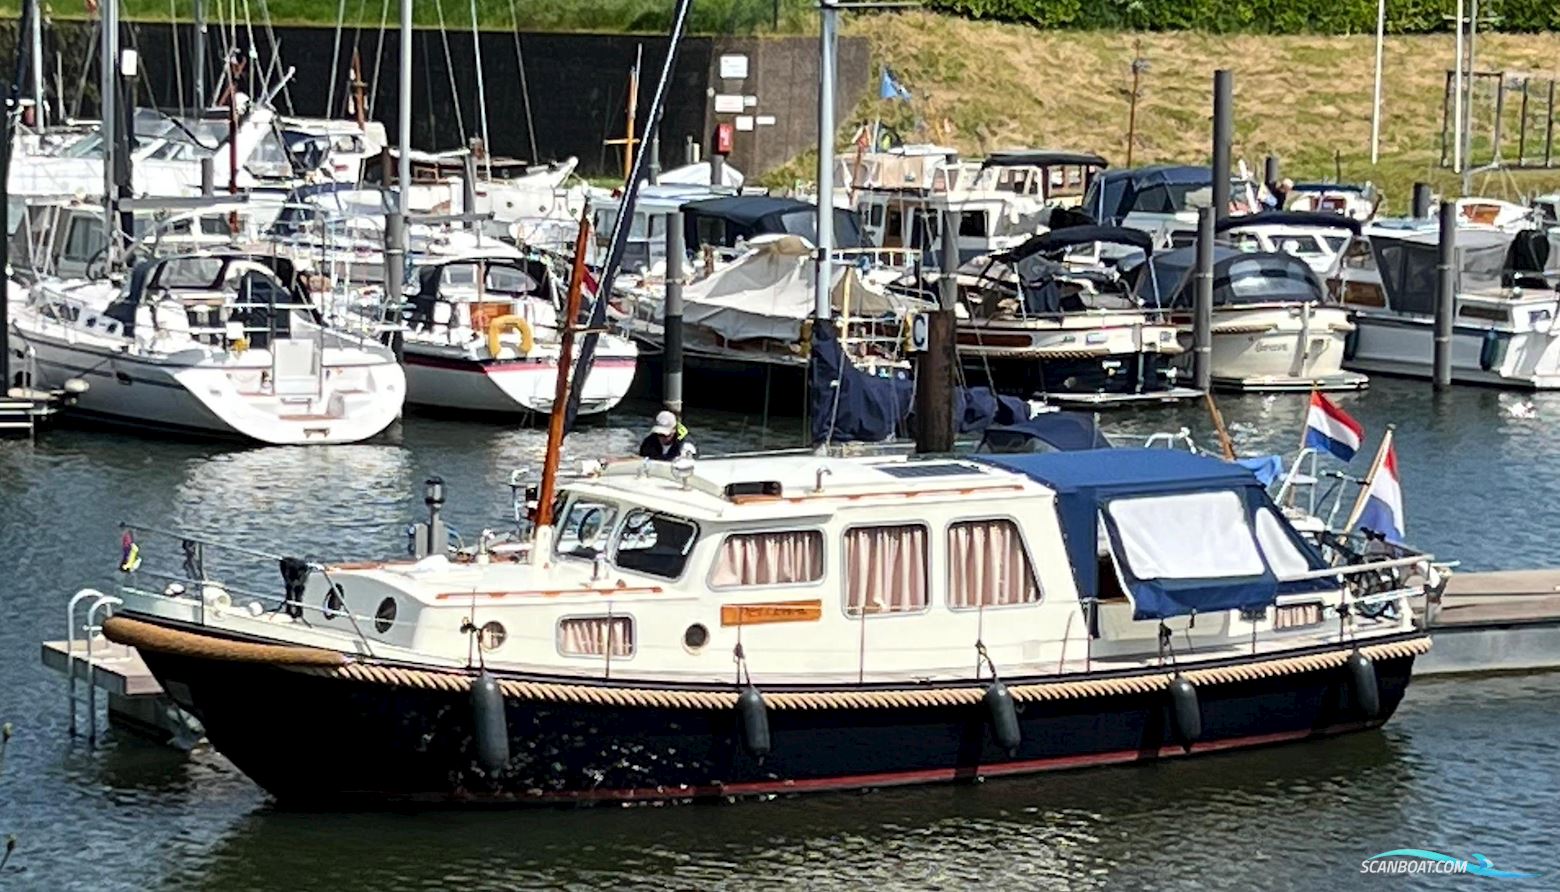 Valk Vlet 11.30 OK AK Motorboot 1975, mit Daf motor, Niederlande